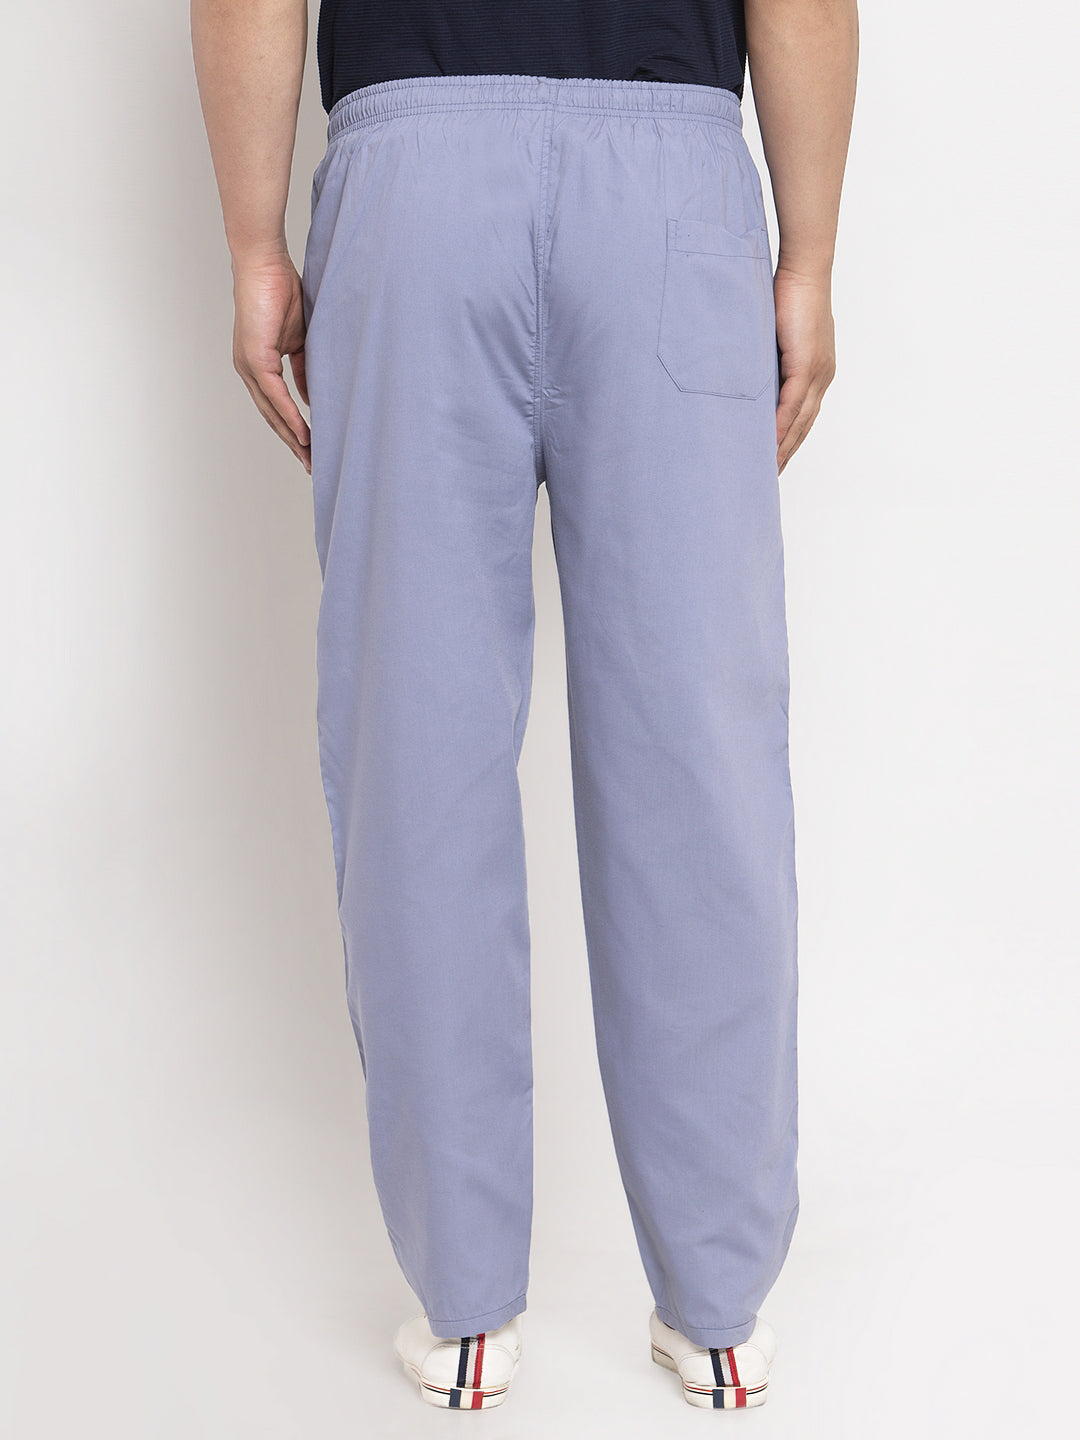 Jainish Men's Grey Solid Cotton Track Pants ( JOG 011Light-Grey ) - Distacart